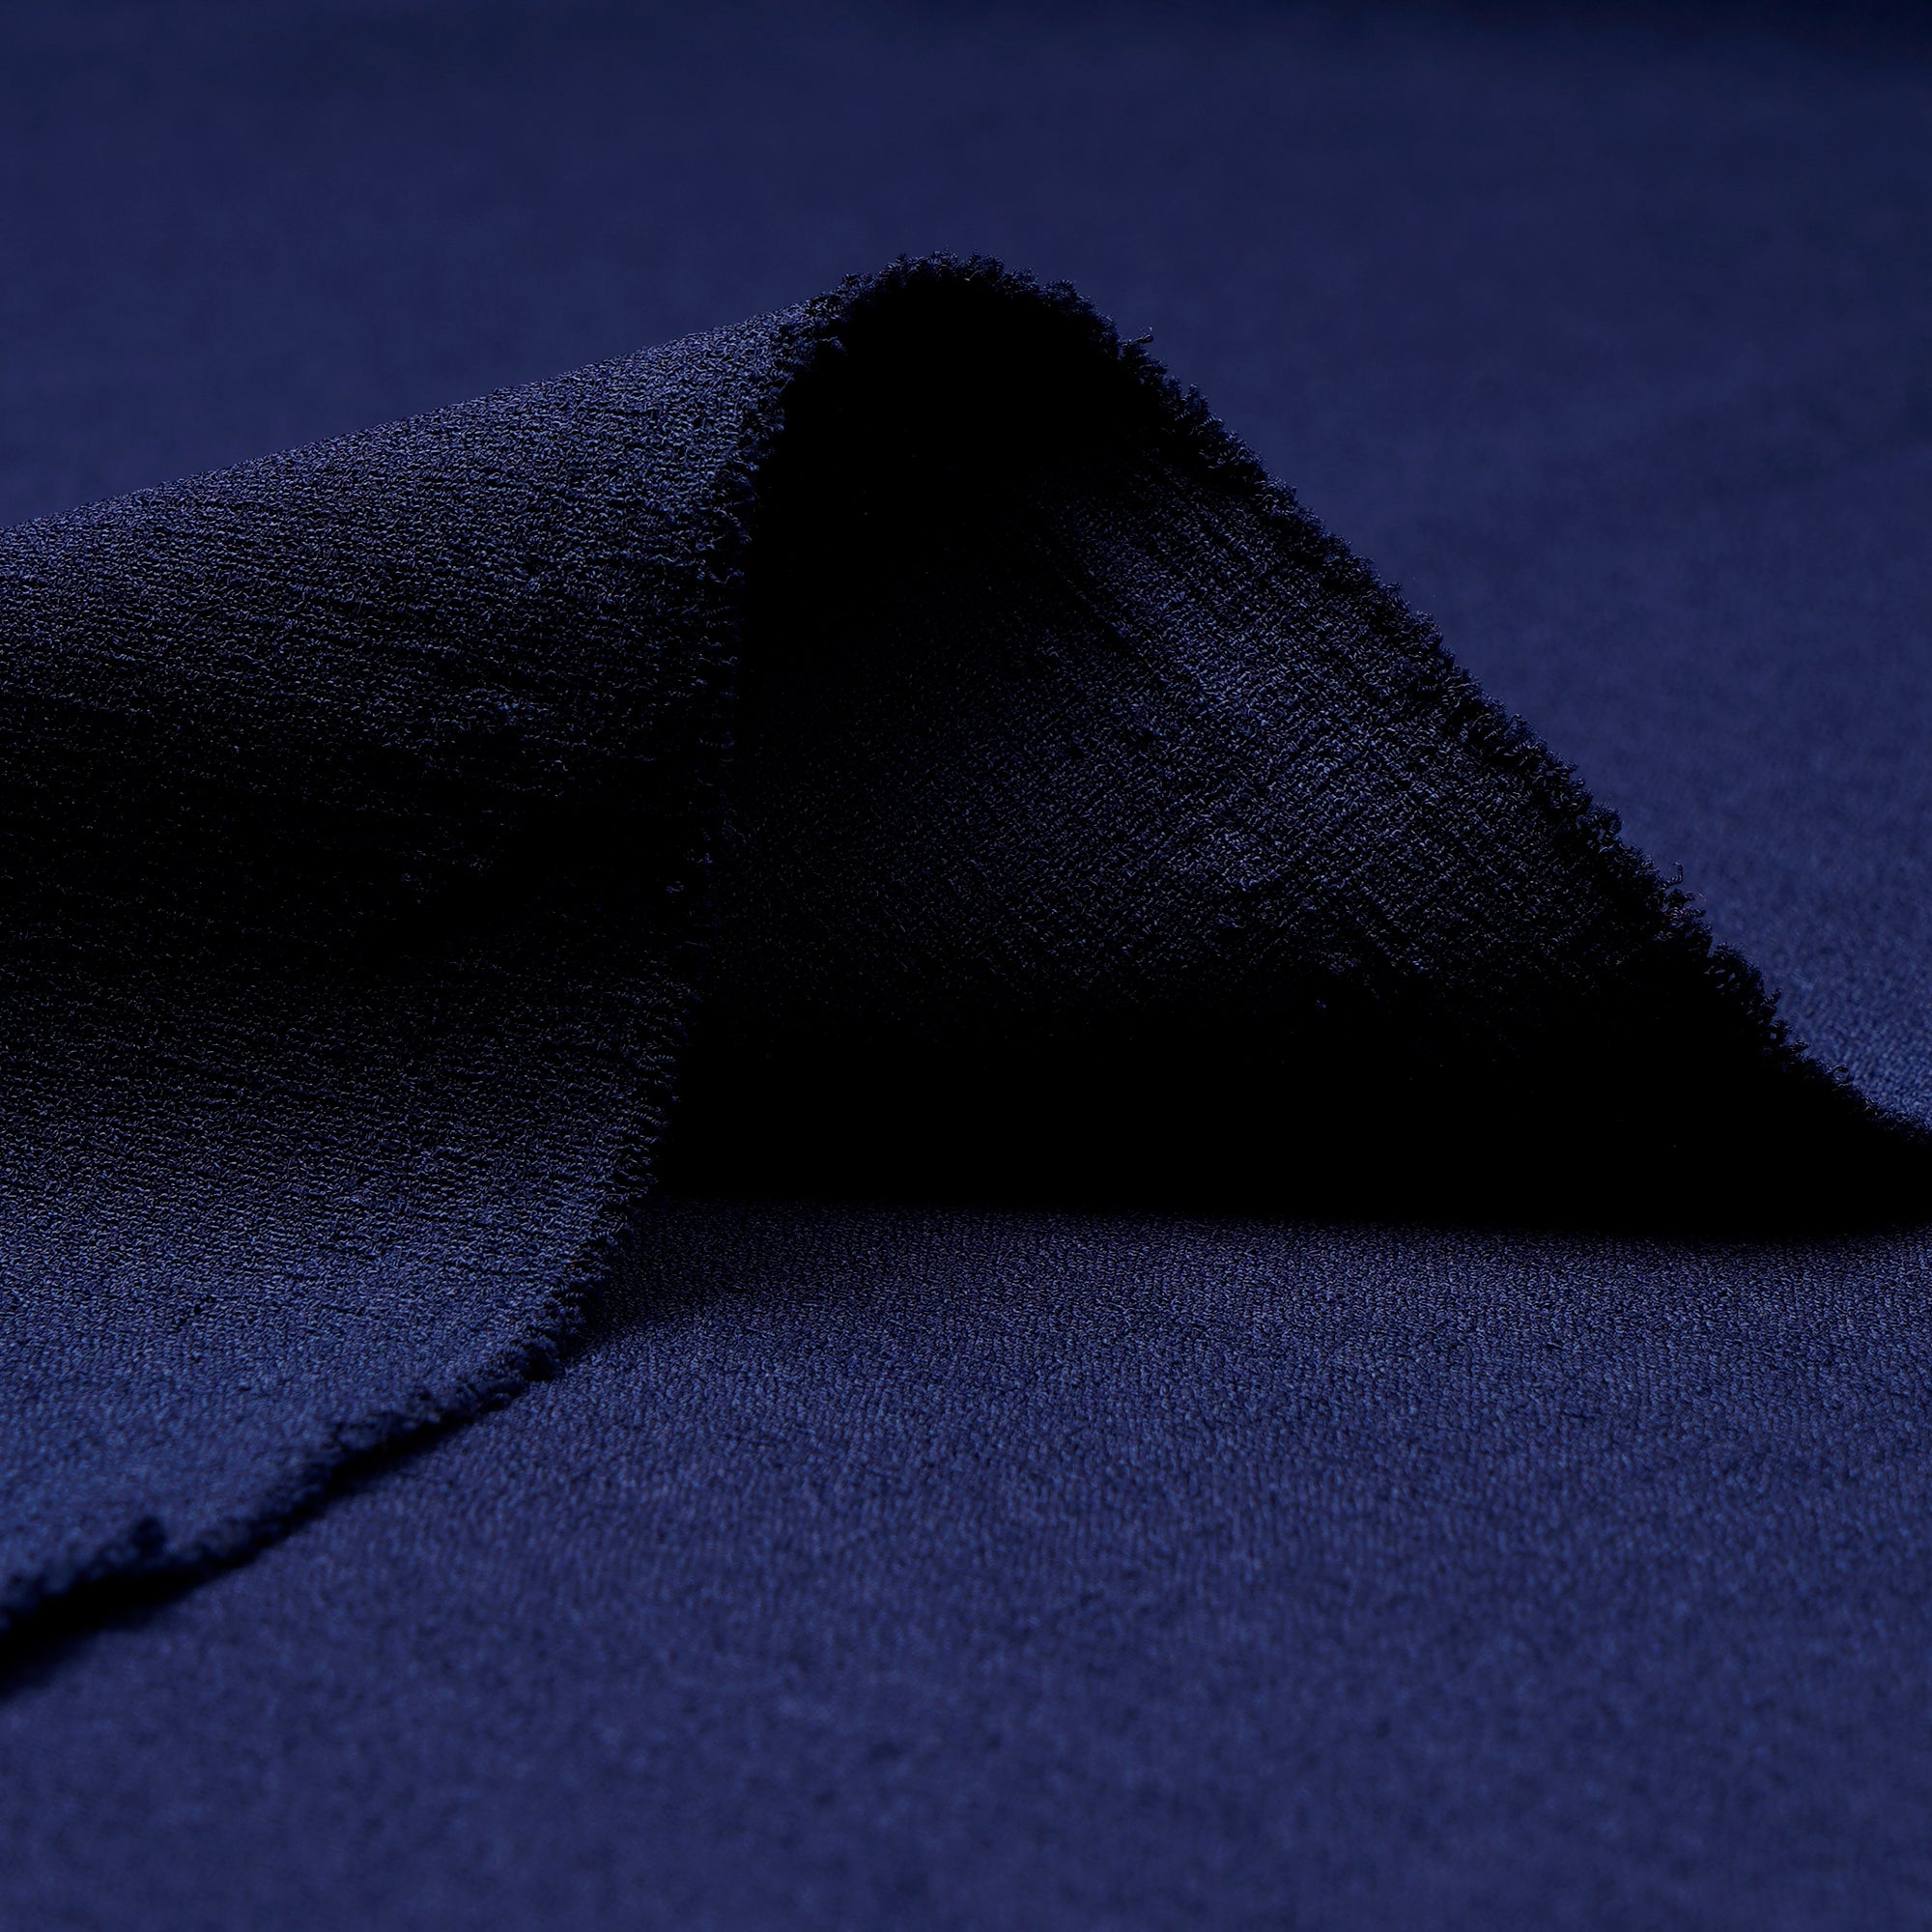 Deep Blue Solid Dyed Imported Heavy Slub Fabric (60" Width)